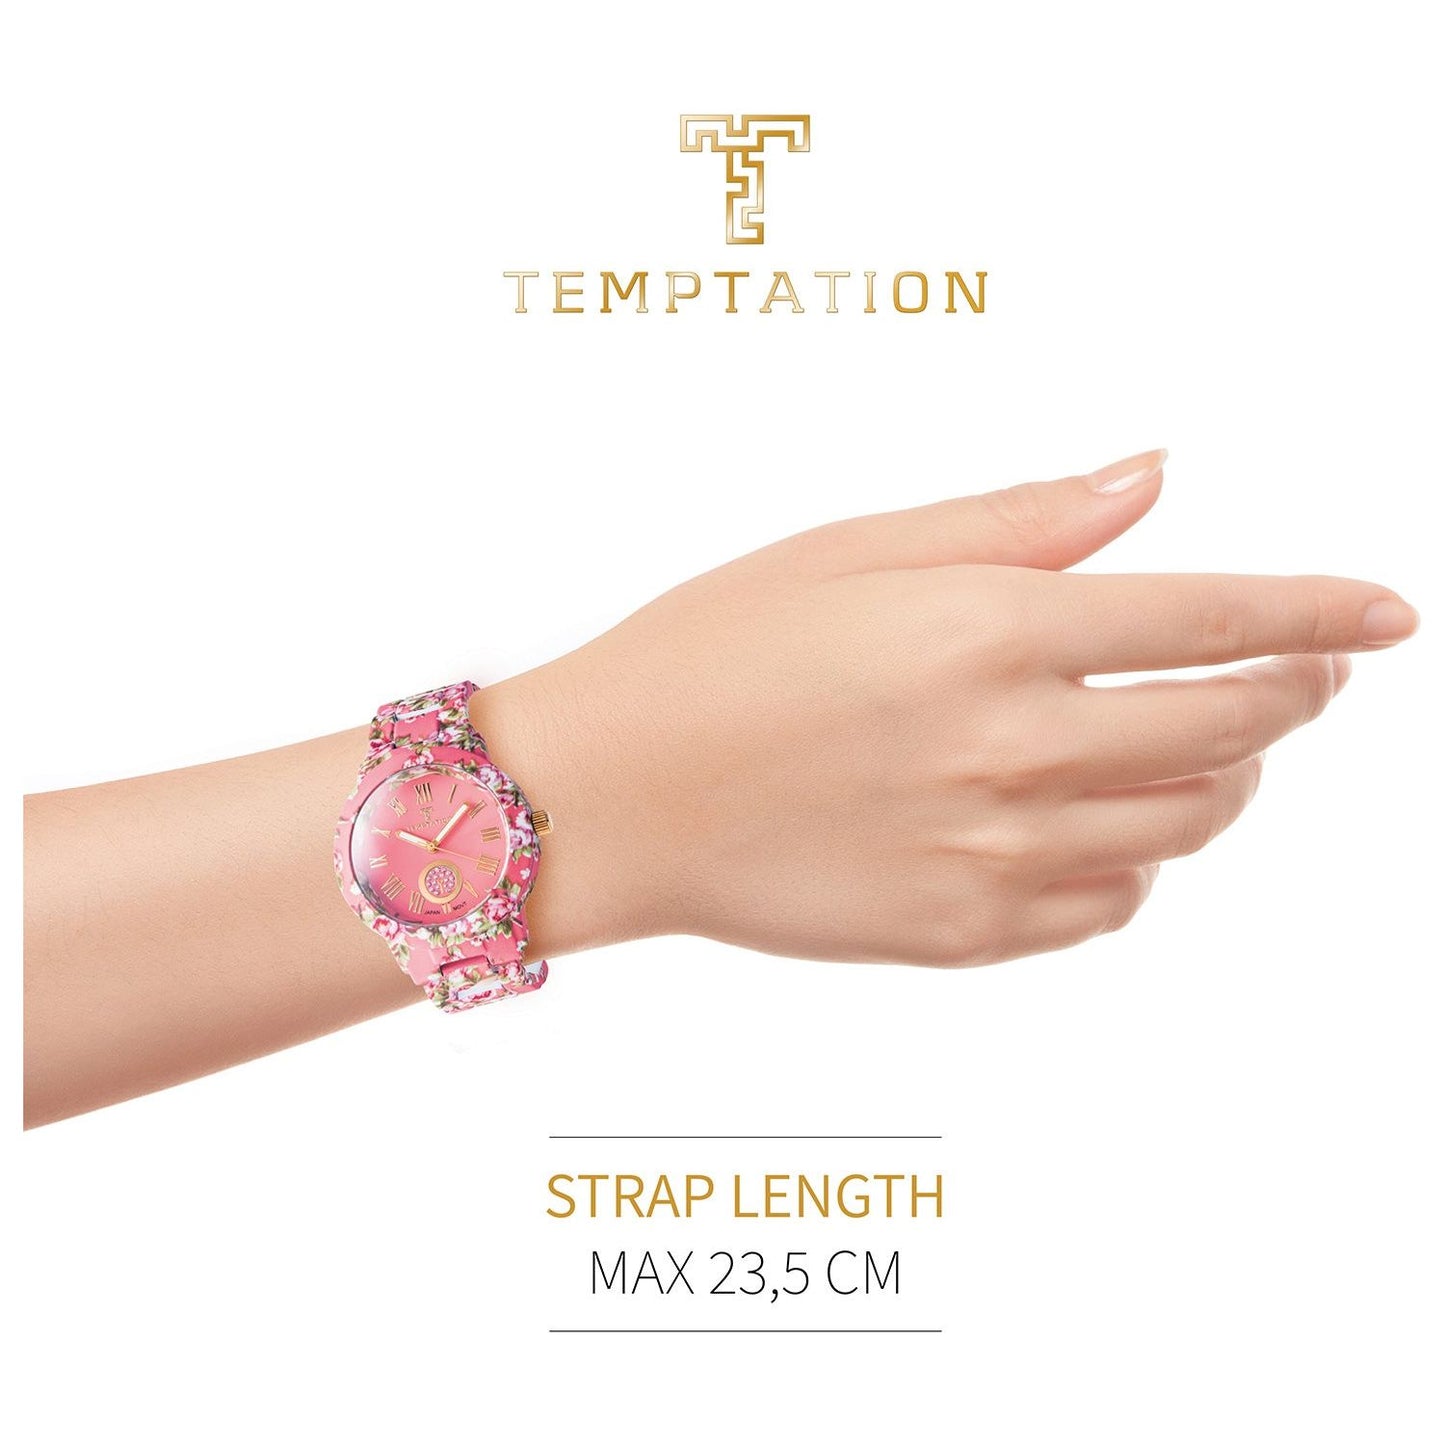 TEMPTATION TEMPTATION MOD. TEA-2015-01 WATCHES temptation-mod-tea-2015-01